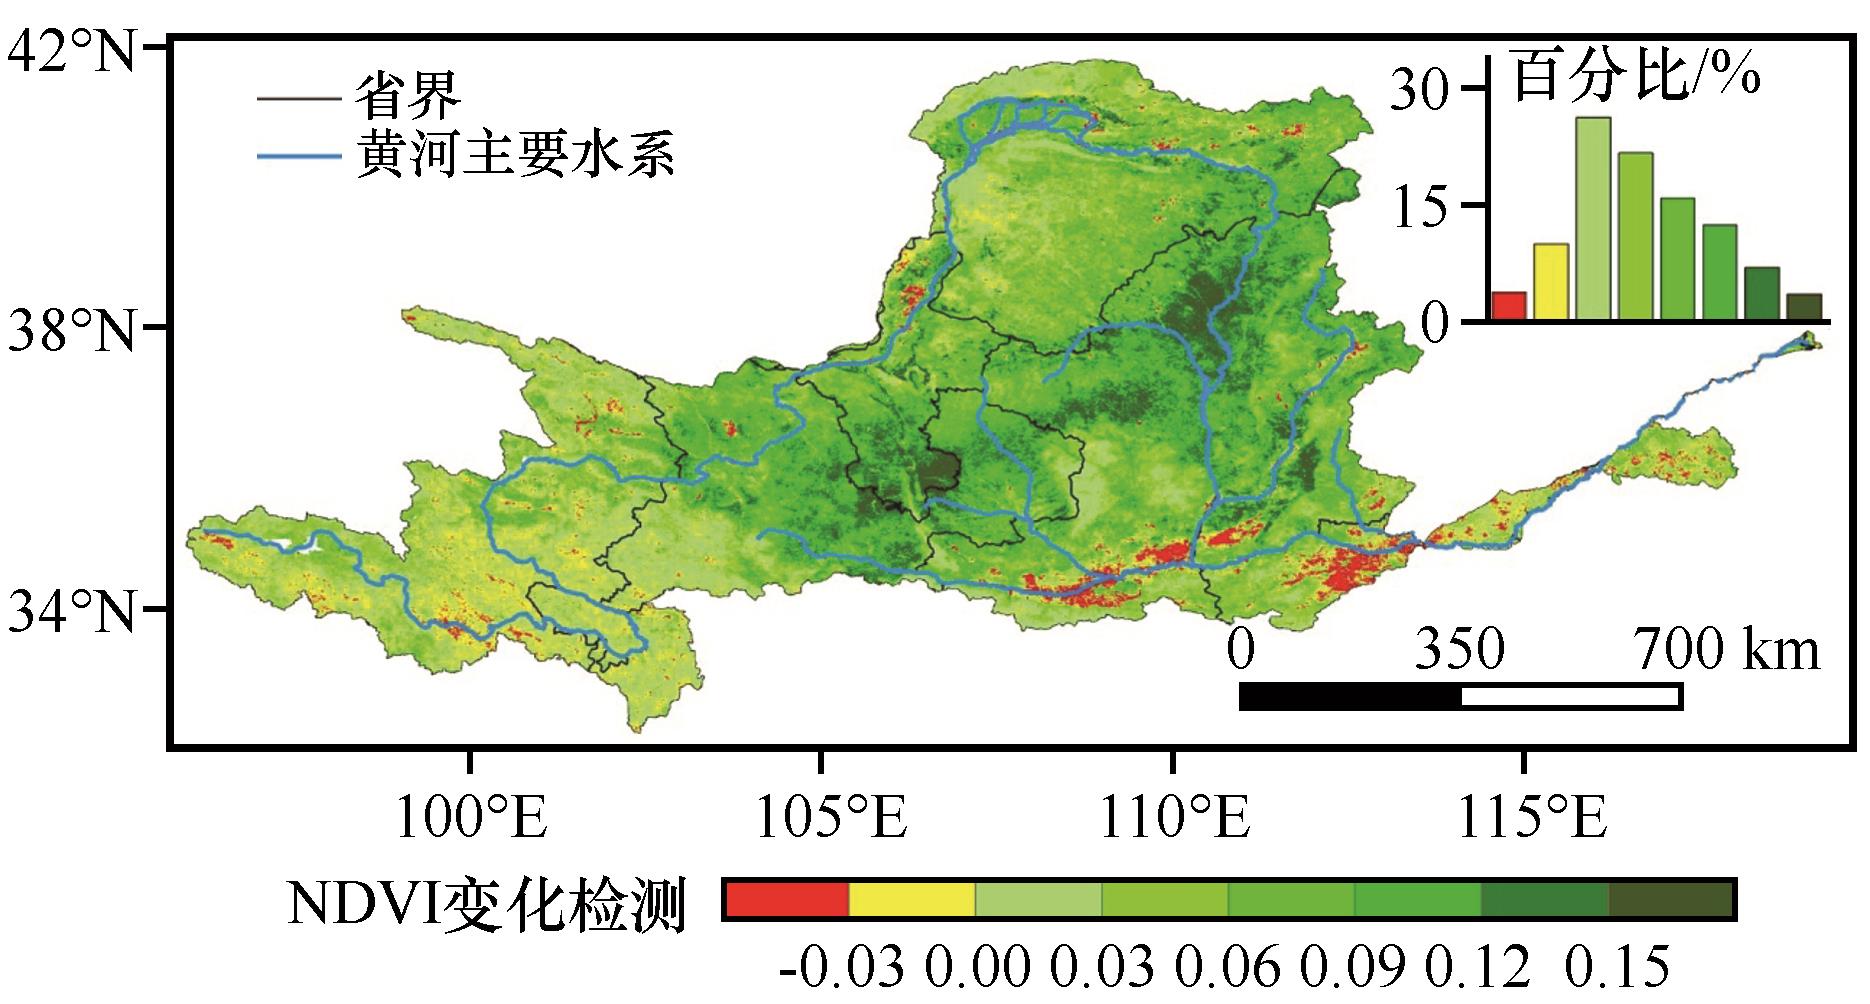 黄河中游响应气候变化和地表相对抬升发育阶地研究